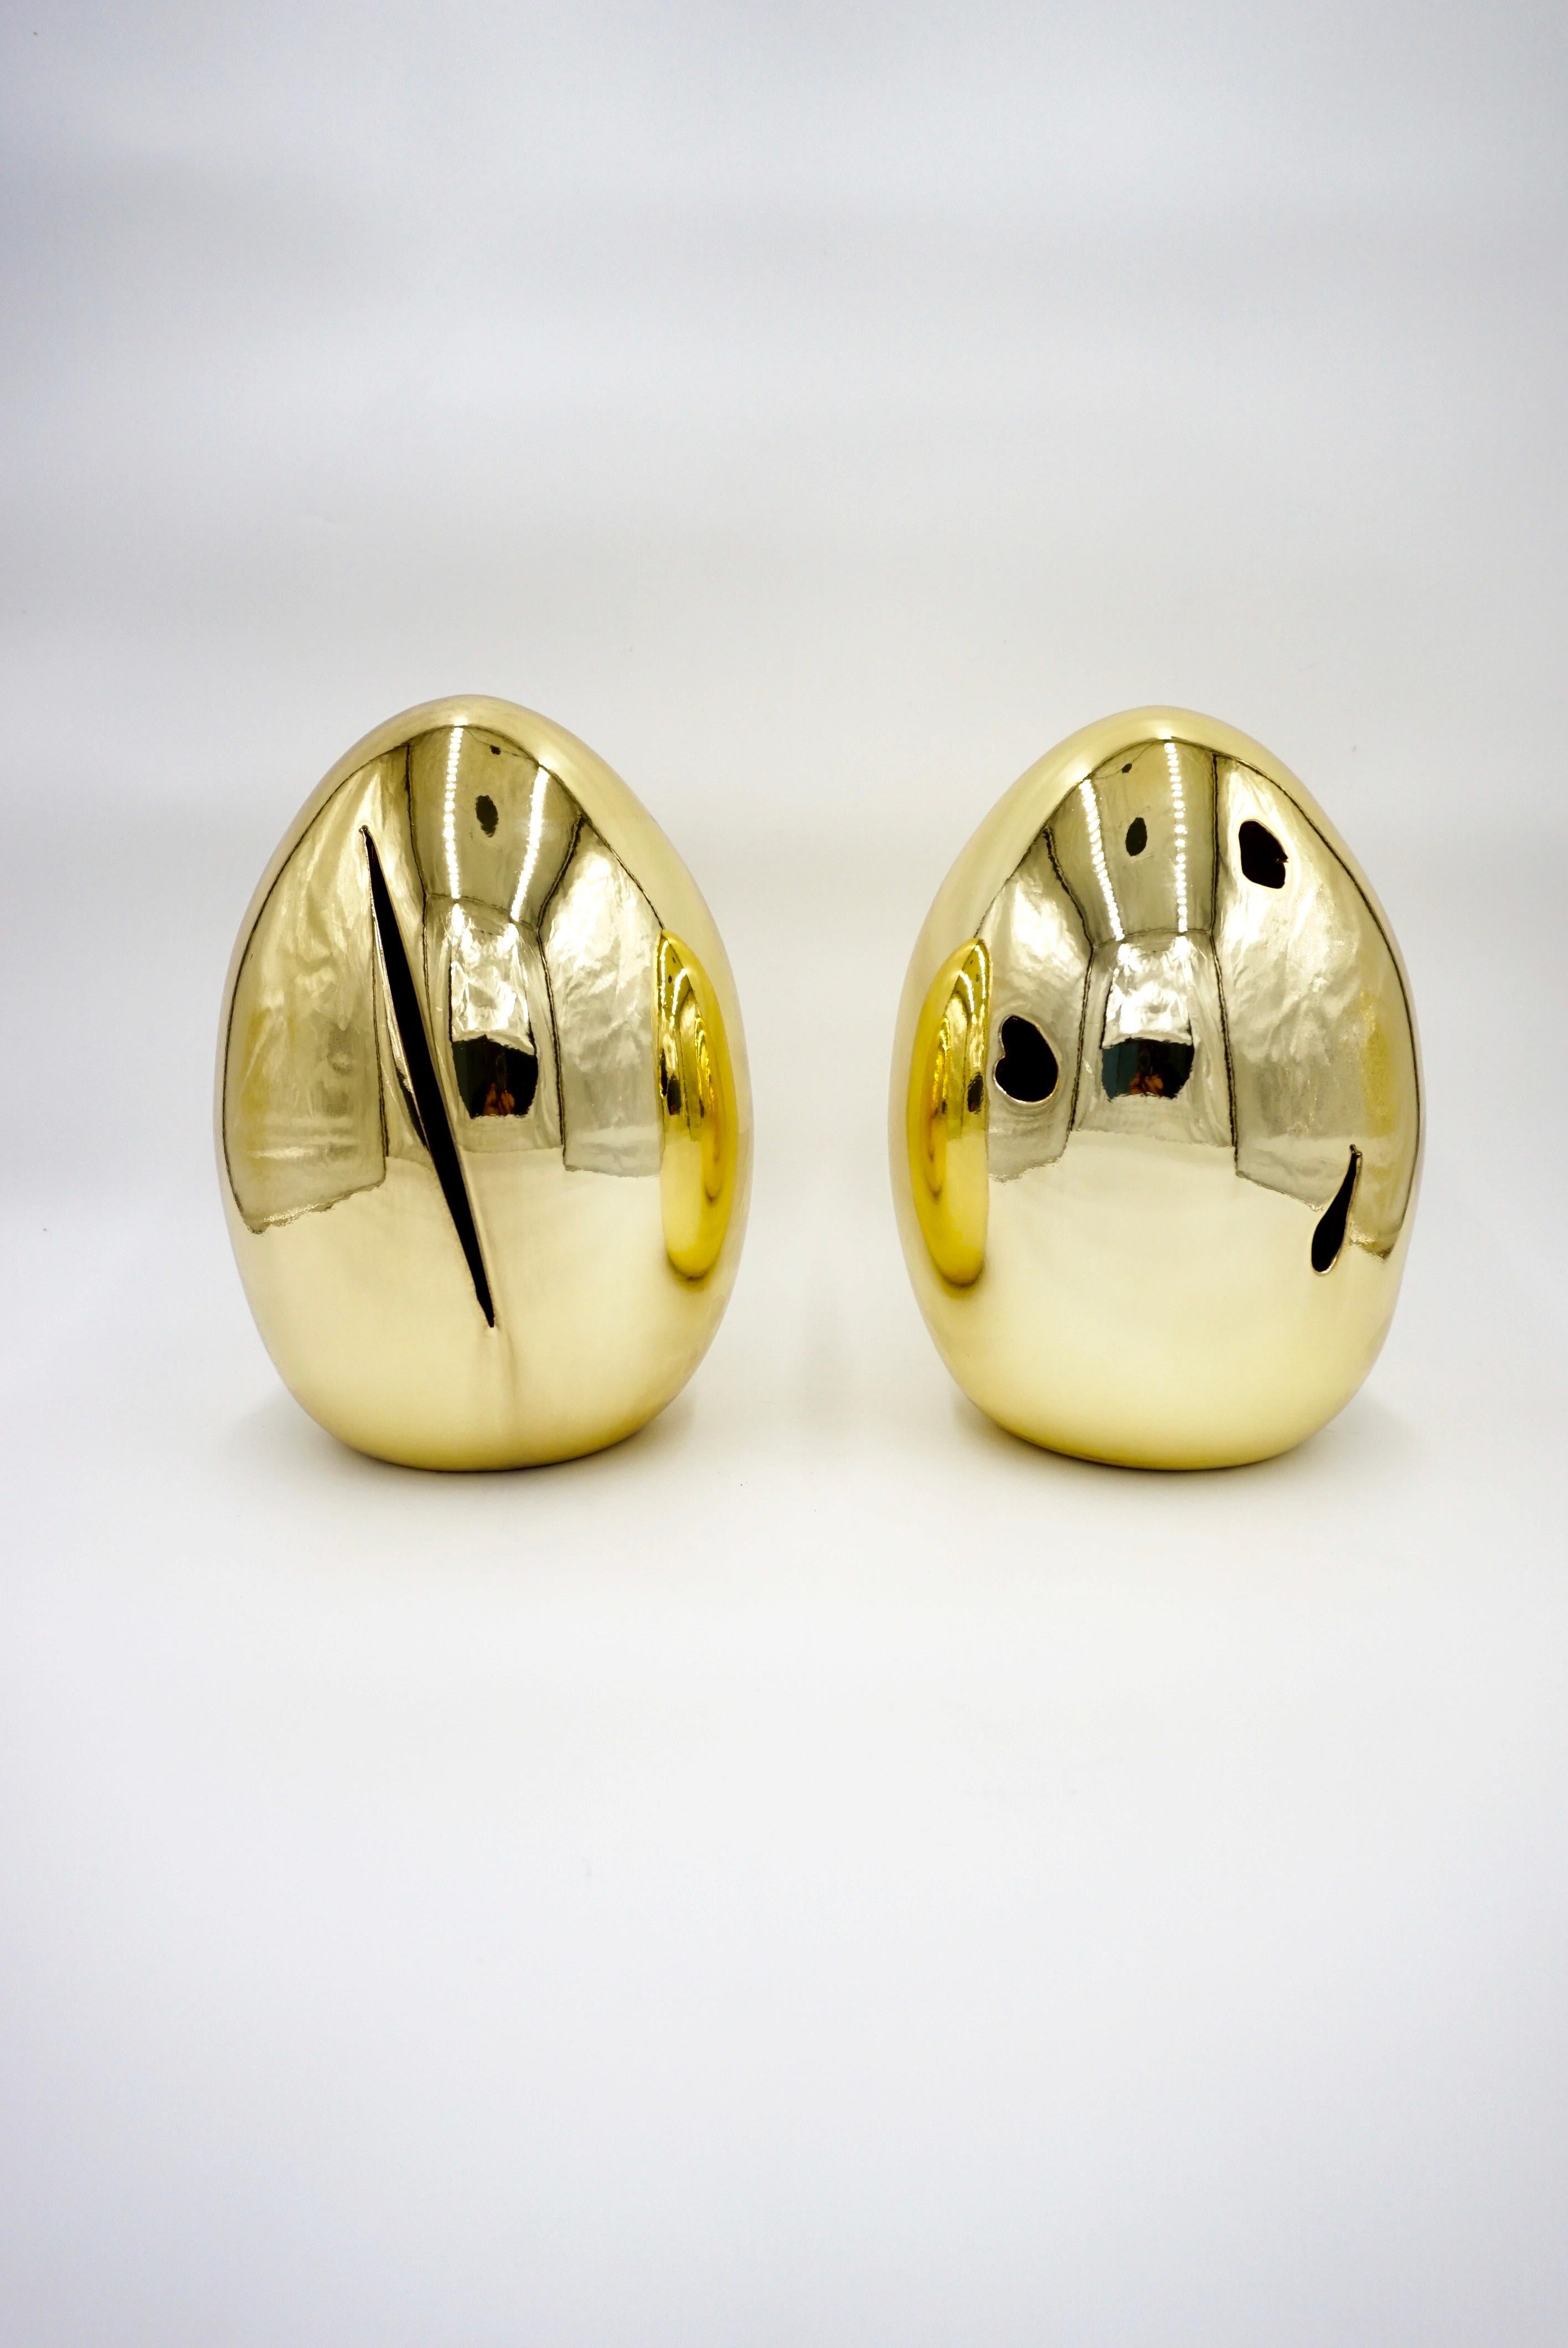 Paar Tischlampen aus polierter Keramik mit goldener Glasur, GOLDEN EGGS, von Lorenzo Ciompi, limitierte Auflage, 2023.
eine Hommage an Lucio Fontana, inspiriert durch die Werke von Lucio Fontana 